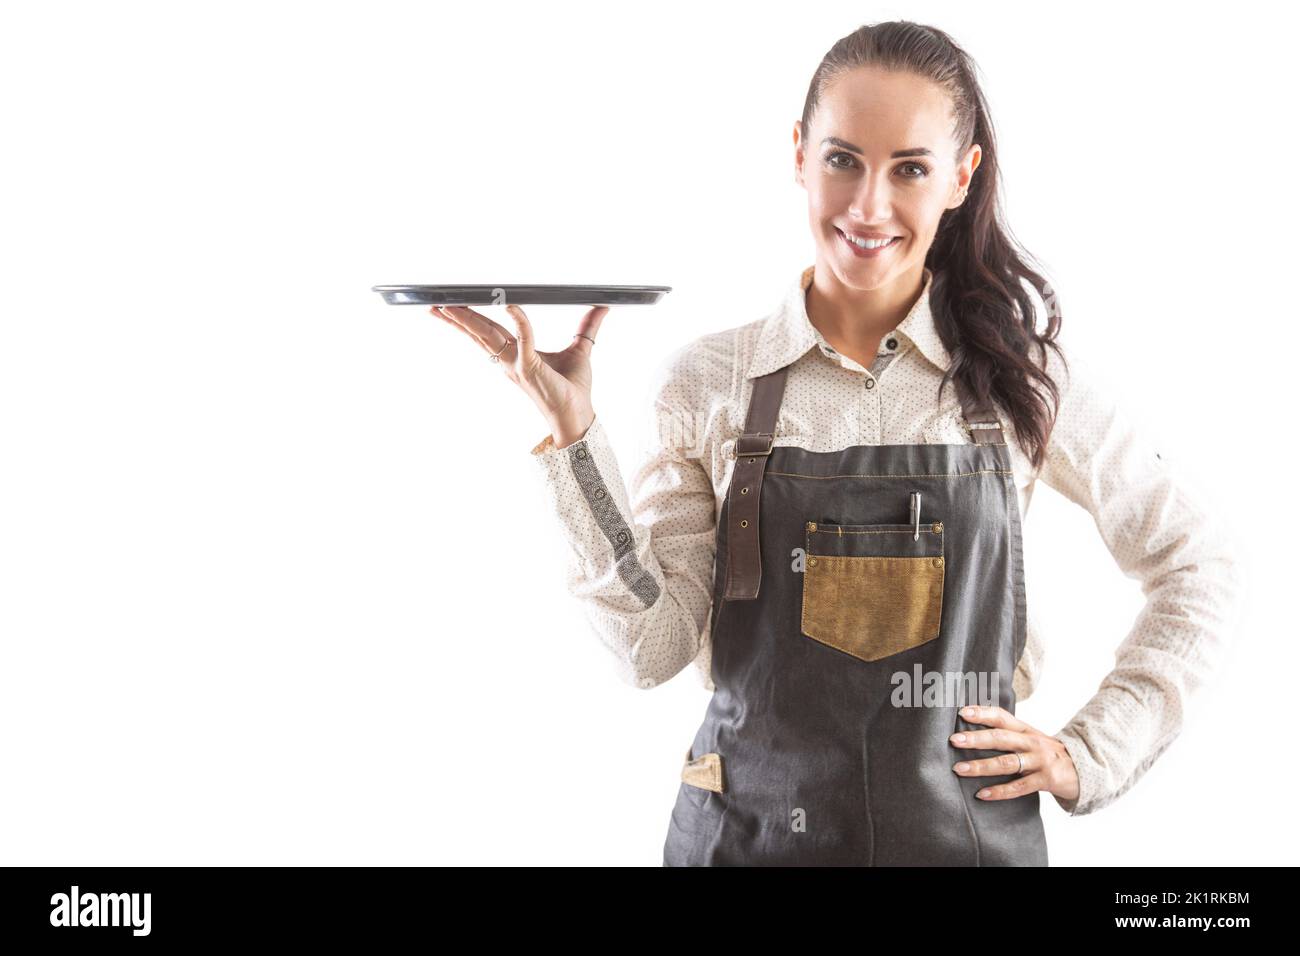 La cameriera che tiene in mano un vassoio è vestita di grembiule posato su un fondo isolato. Foto Stock